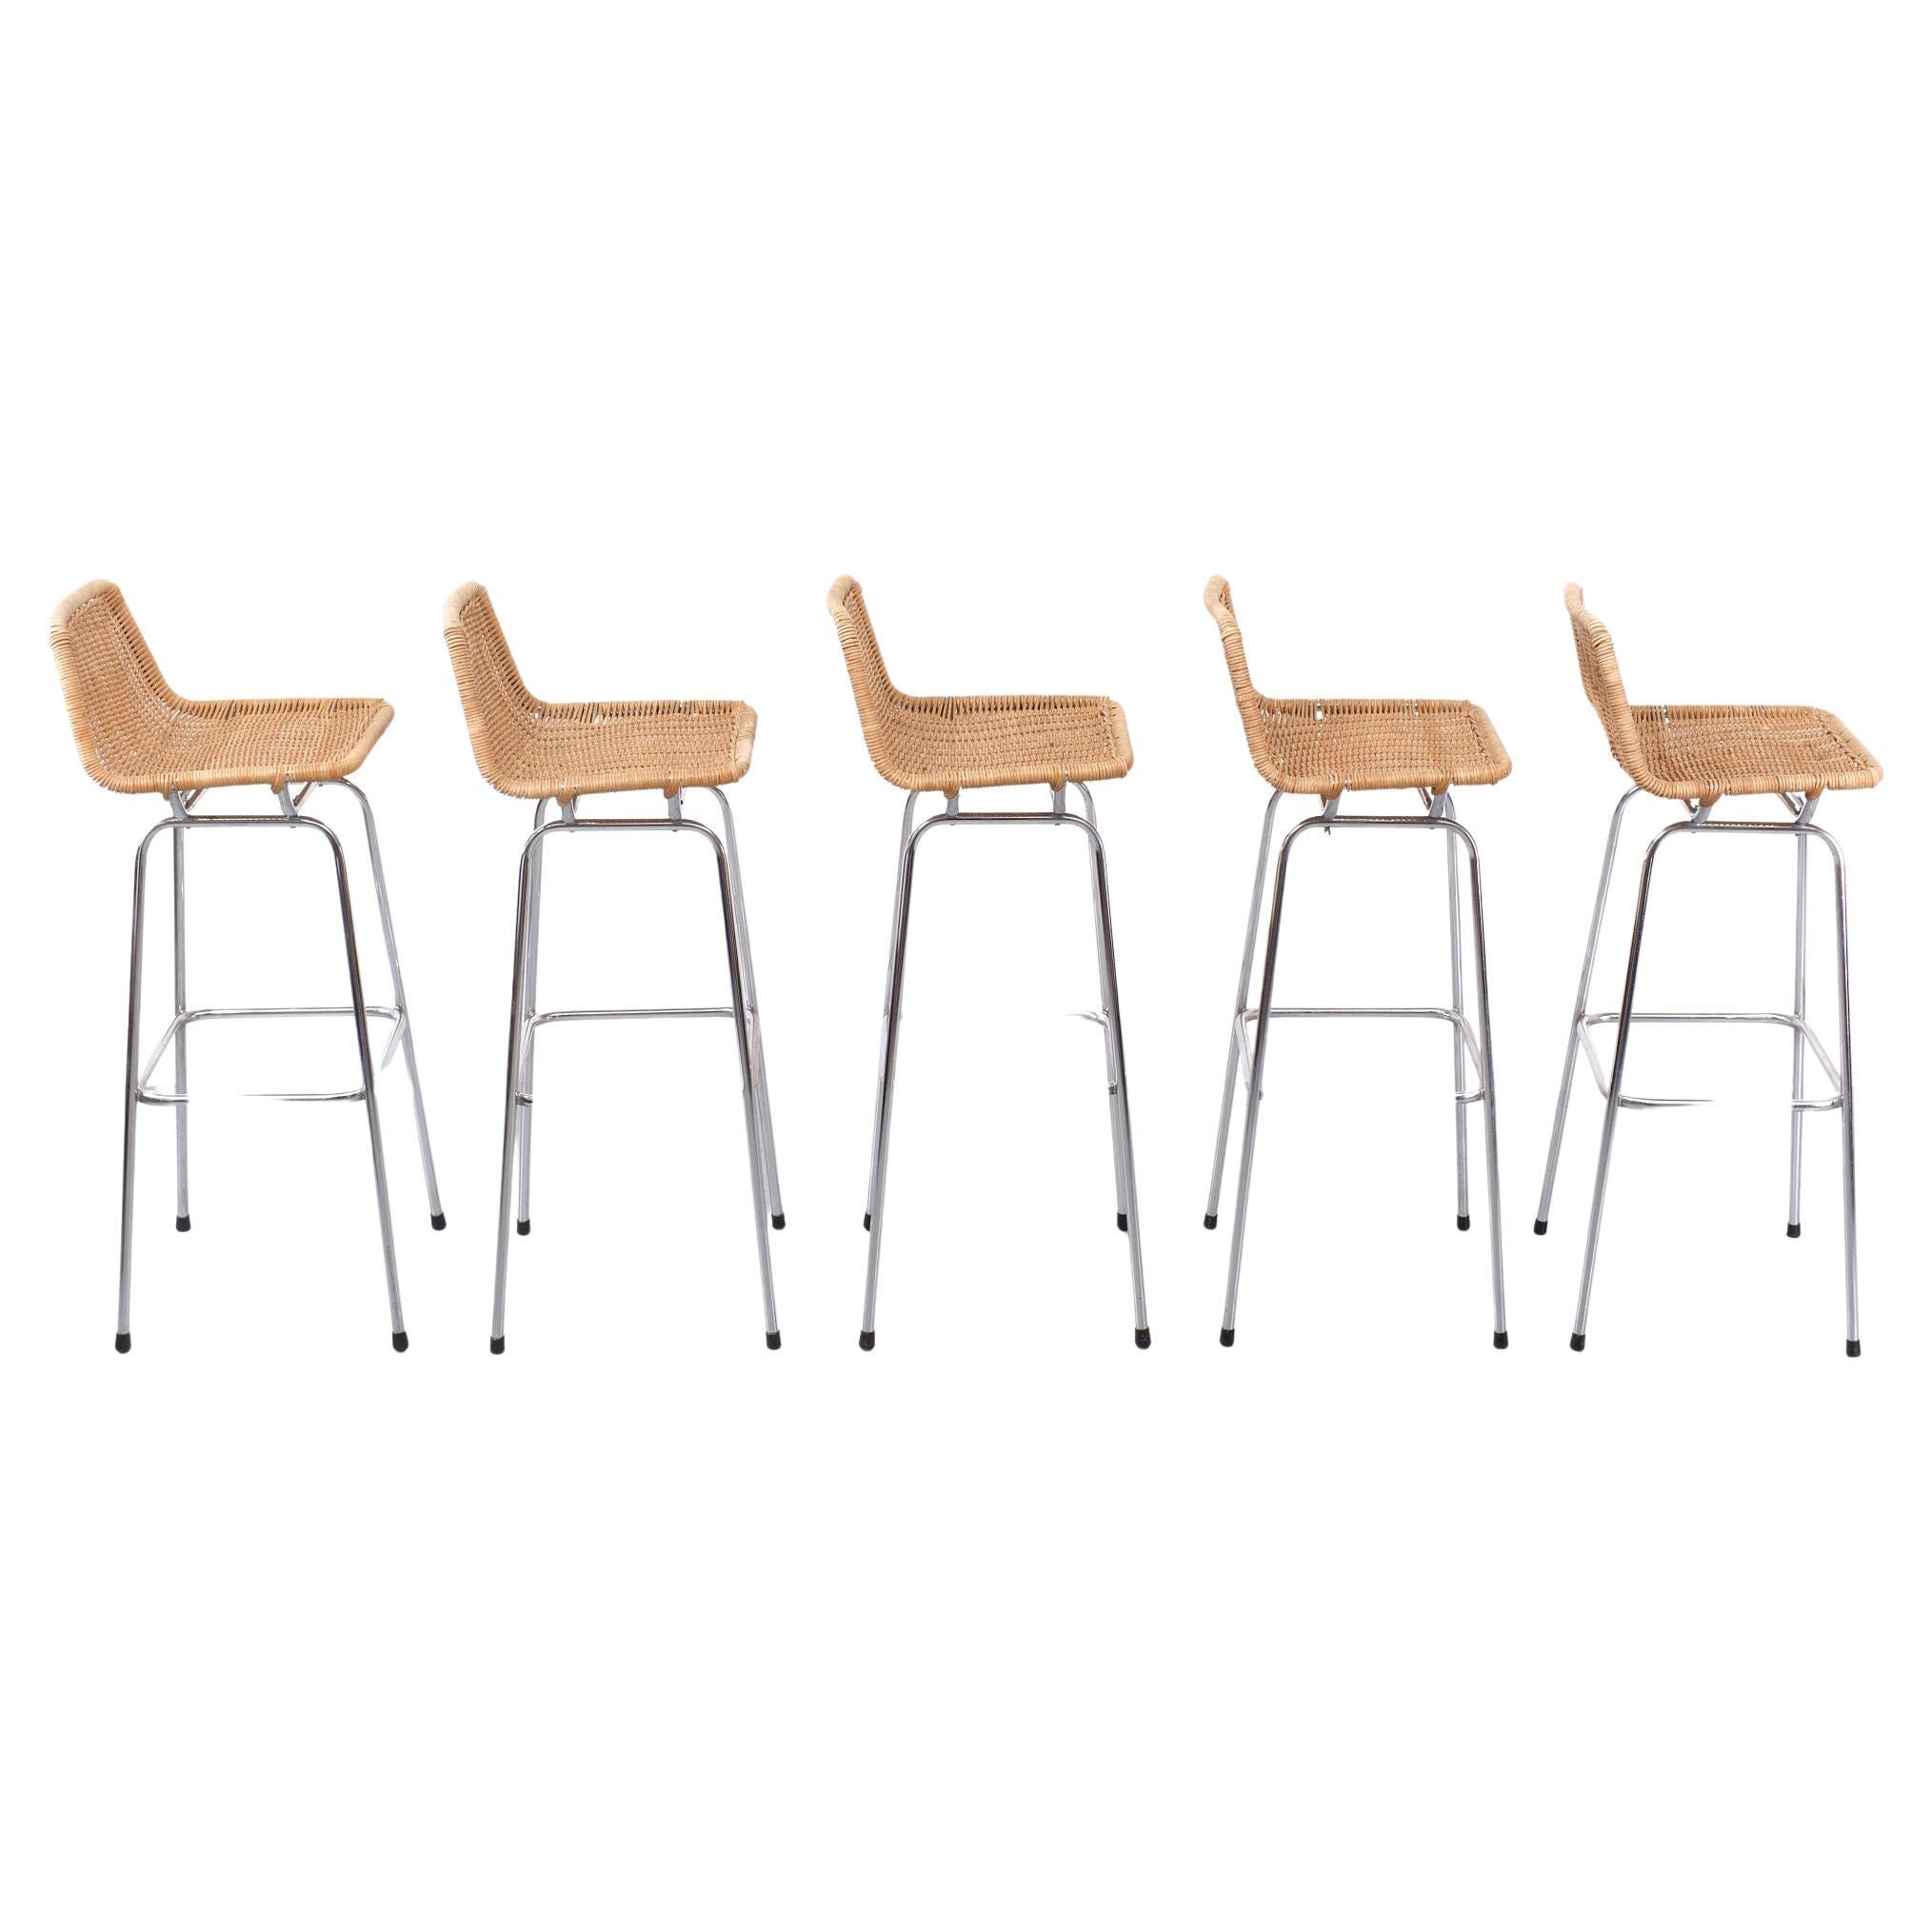 Wonderful Set of 5 Rohe Noordwolde Wicker stools. Design by Dirk Van Sliedrecht 1960s Chrome on Metal legs. Nice elegant design. Normal wear and tear. see photos.